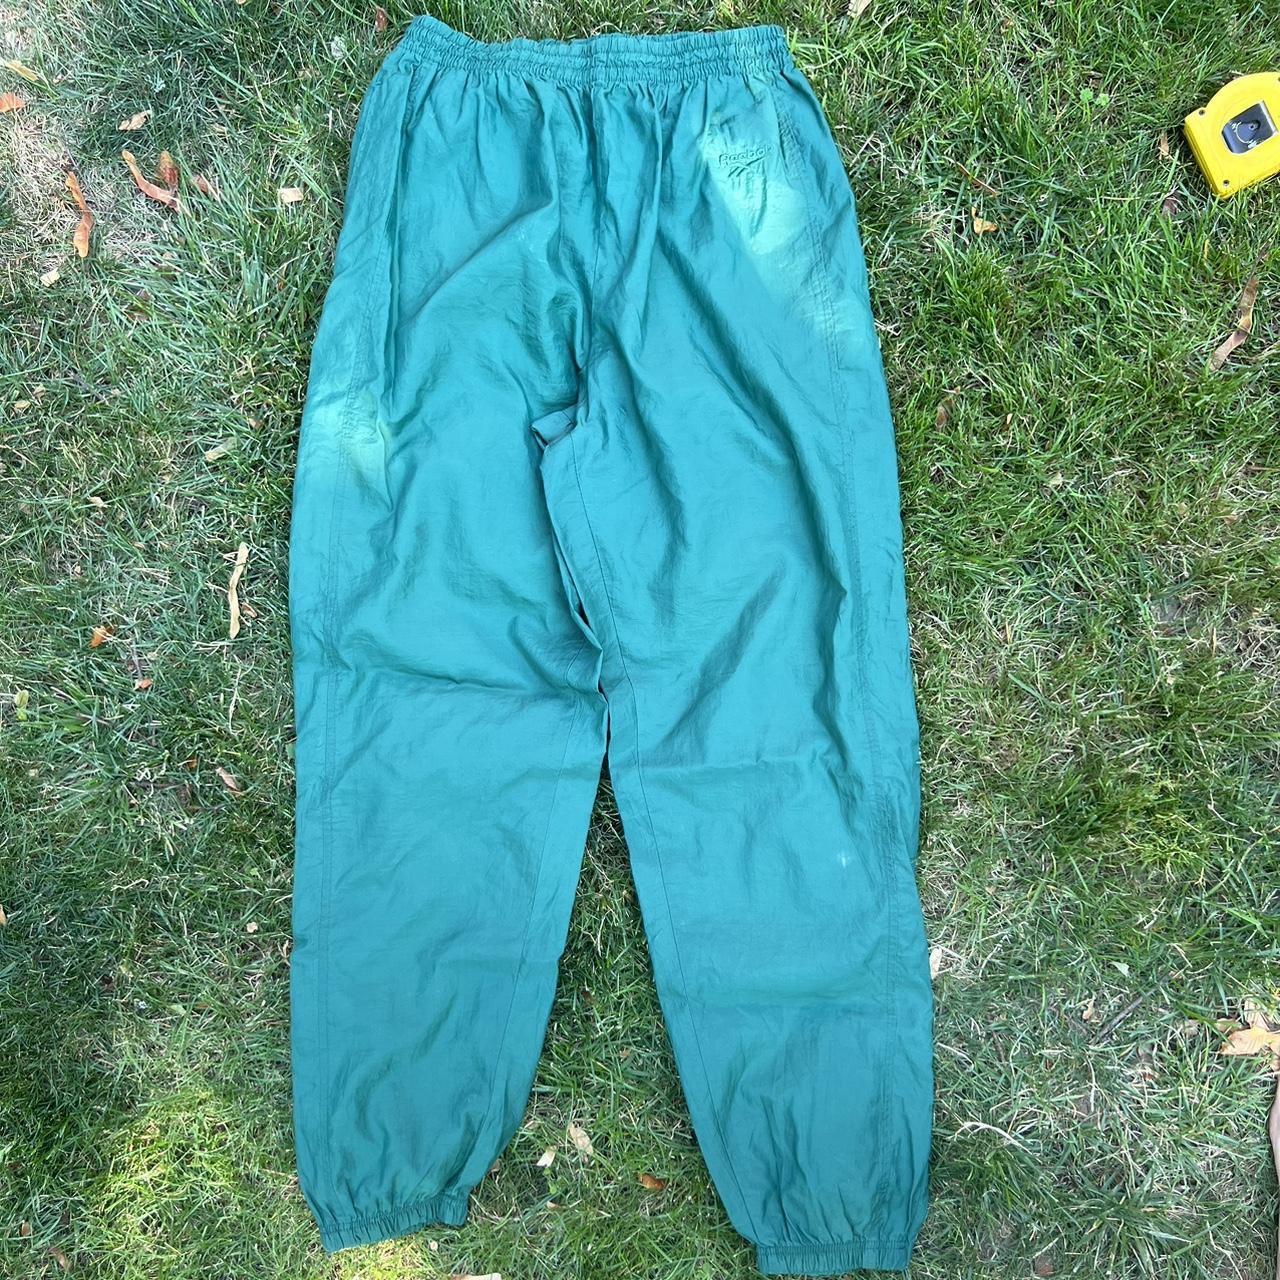 Bot farvestof Selvforkælelse Green Reebok vintage track pants with no stains or... - Depop